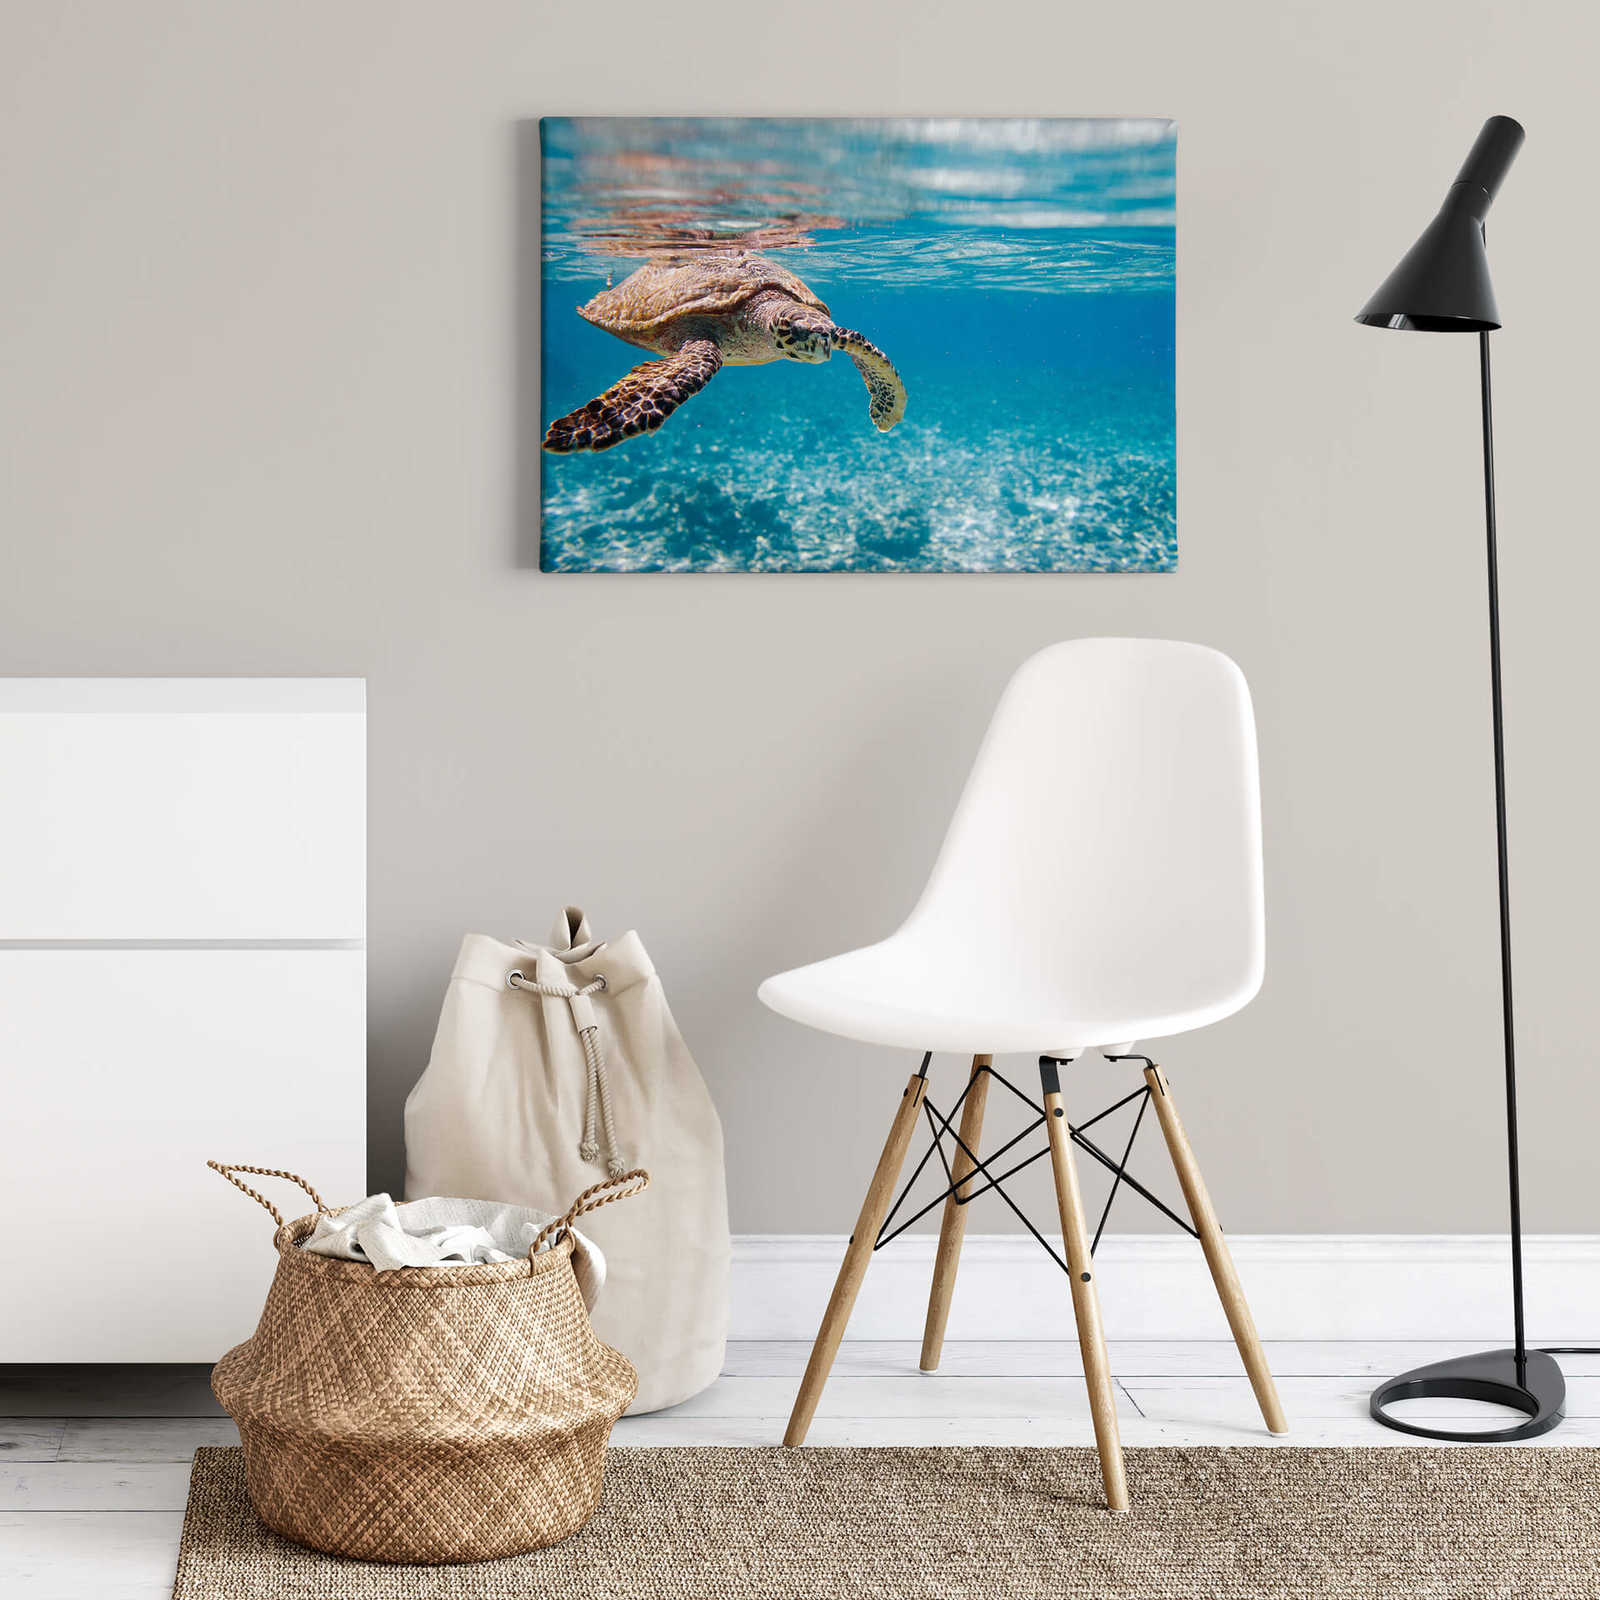             Onderwater canvas schilderij met schildpad - 0,70 m x 0,50 m
        